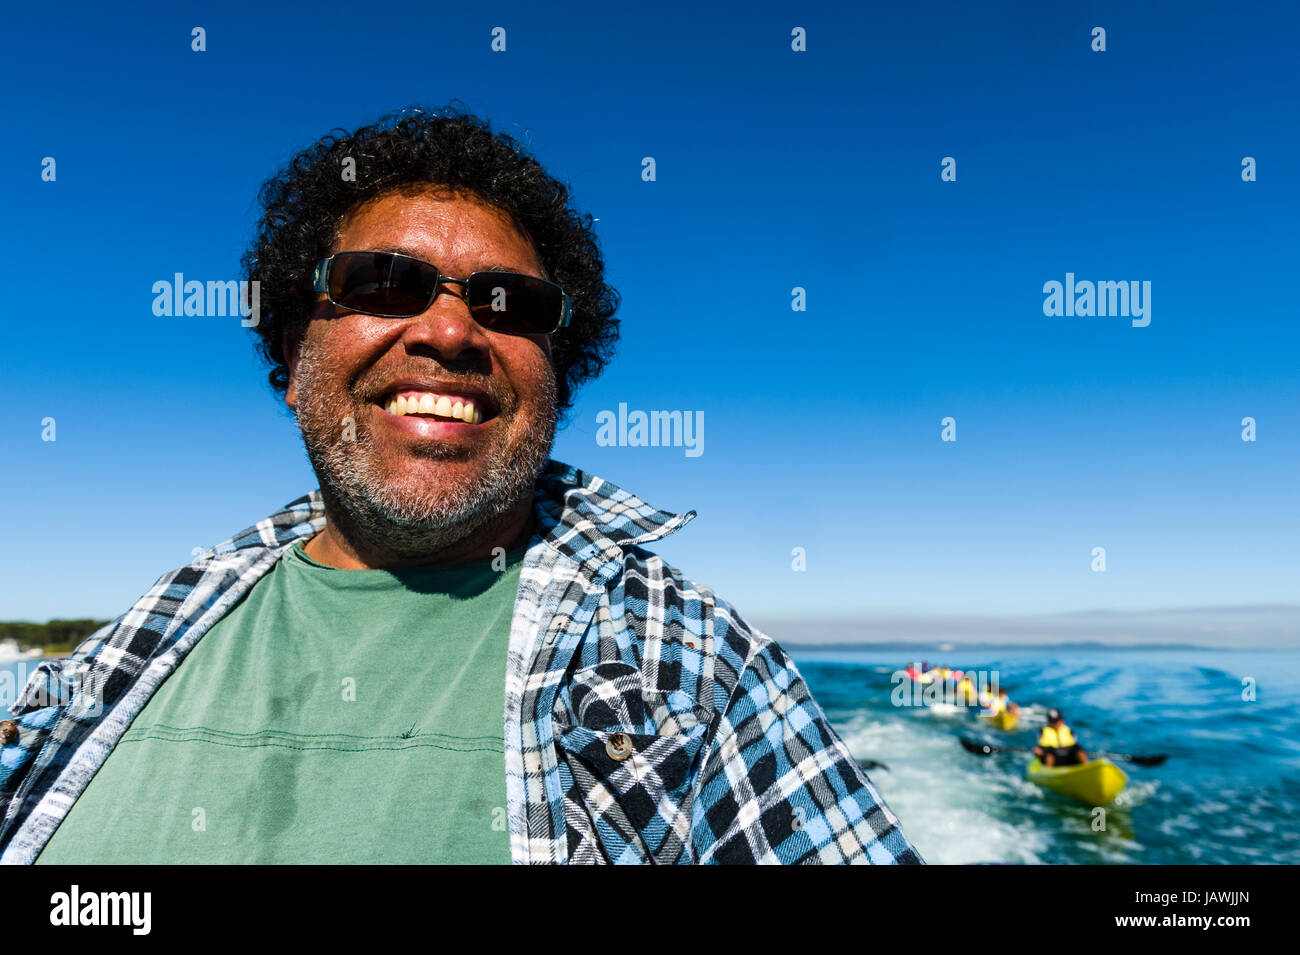 Das lächelnde Gesicht von einem Aborigine Bootskapitän und Guide Sonnenbrille. Stockfoto